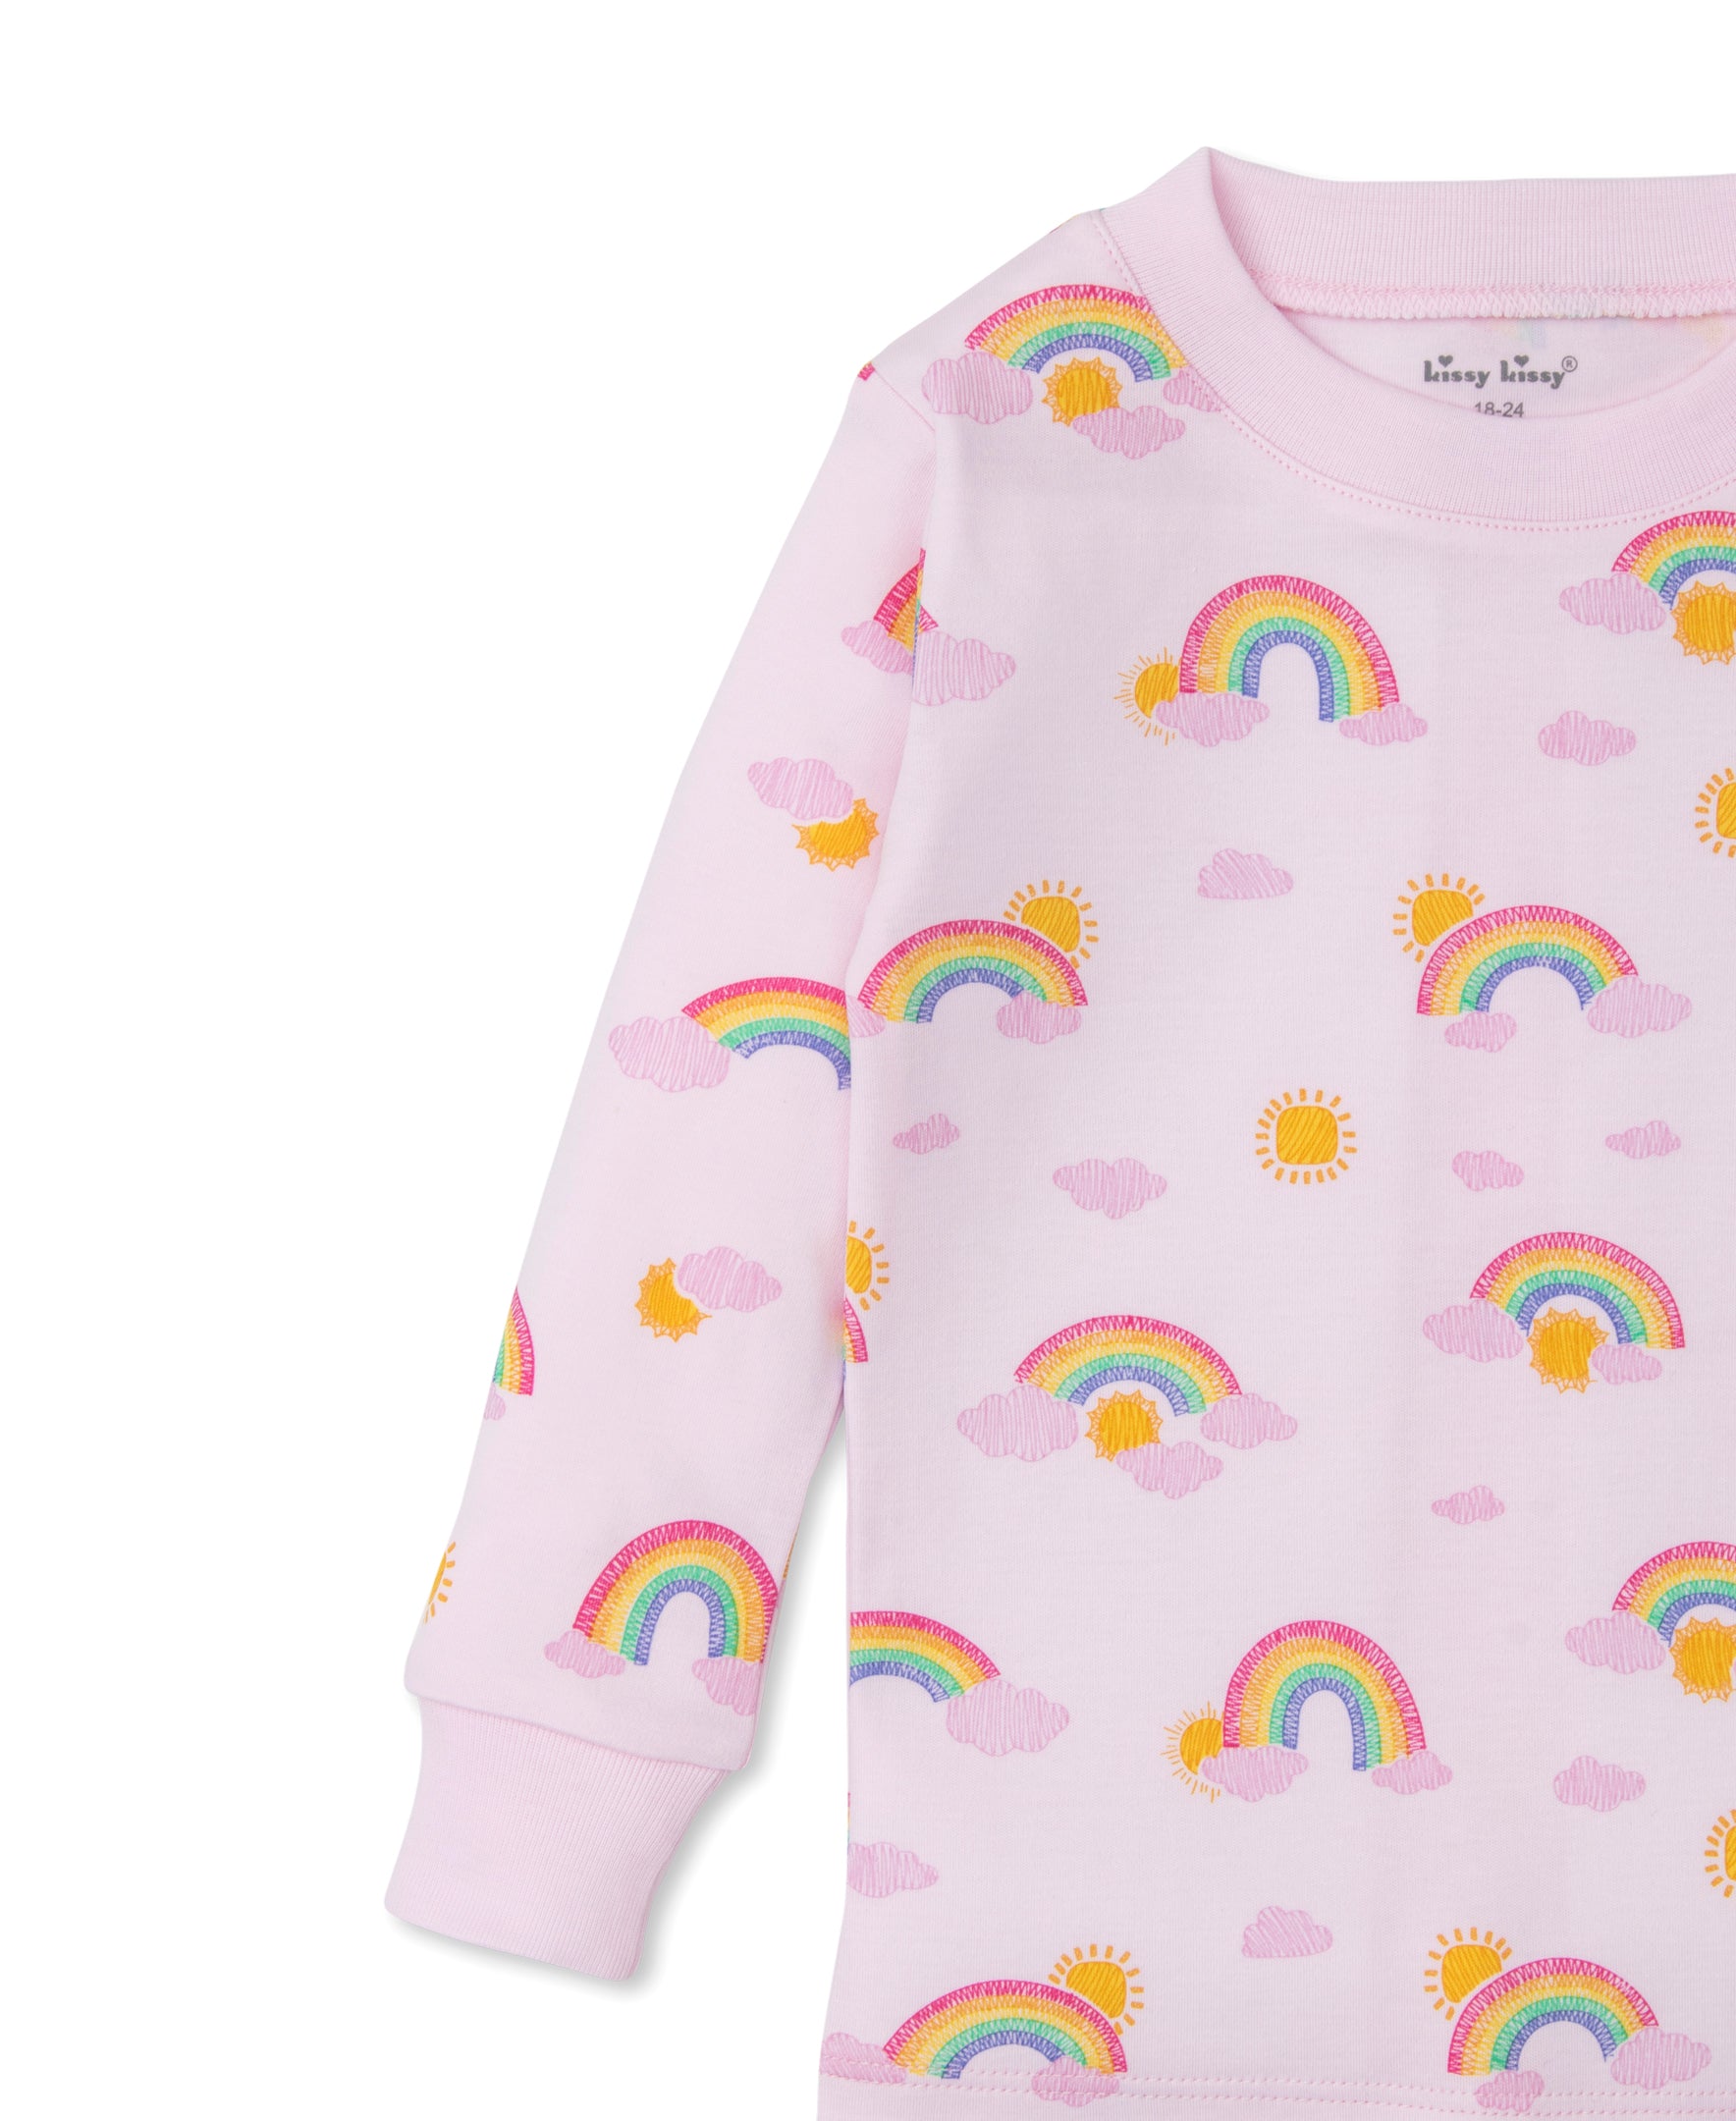 Sunshine Rainbows Toddler Pajama Set - Kissy Kissy